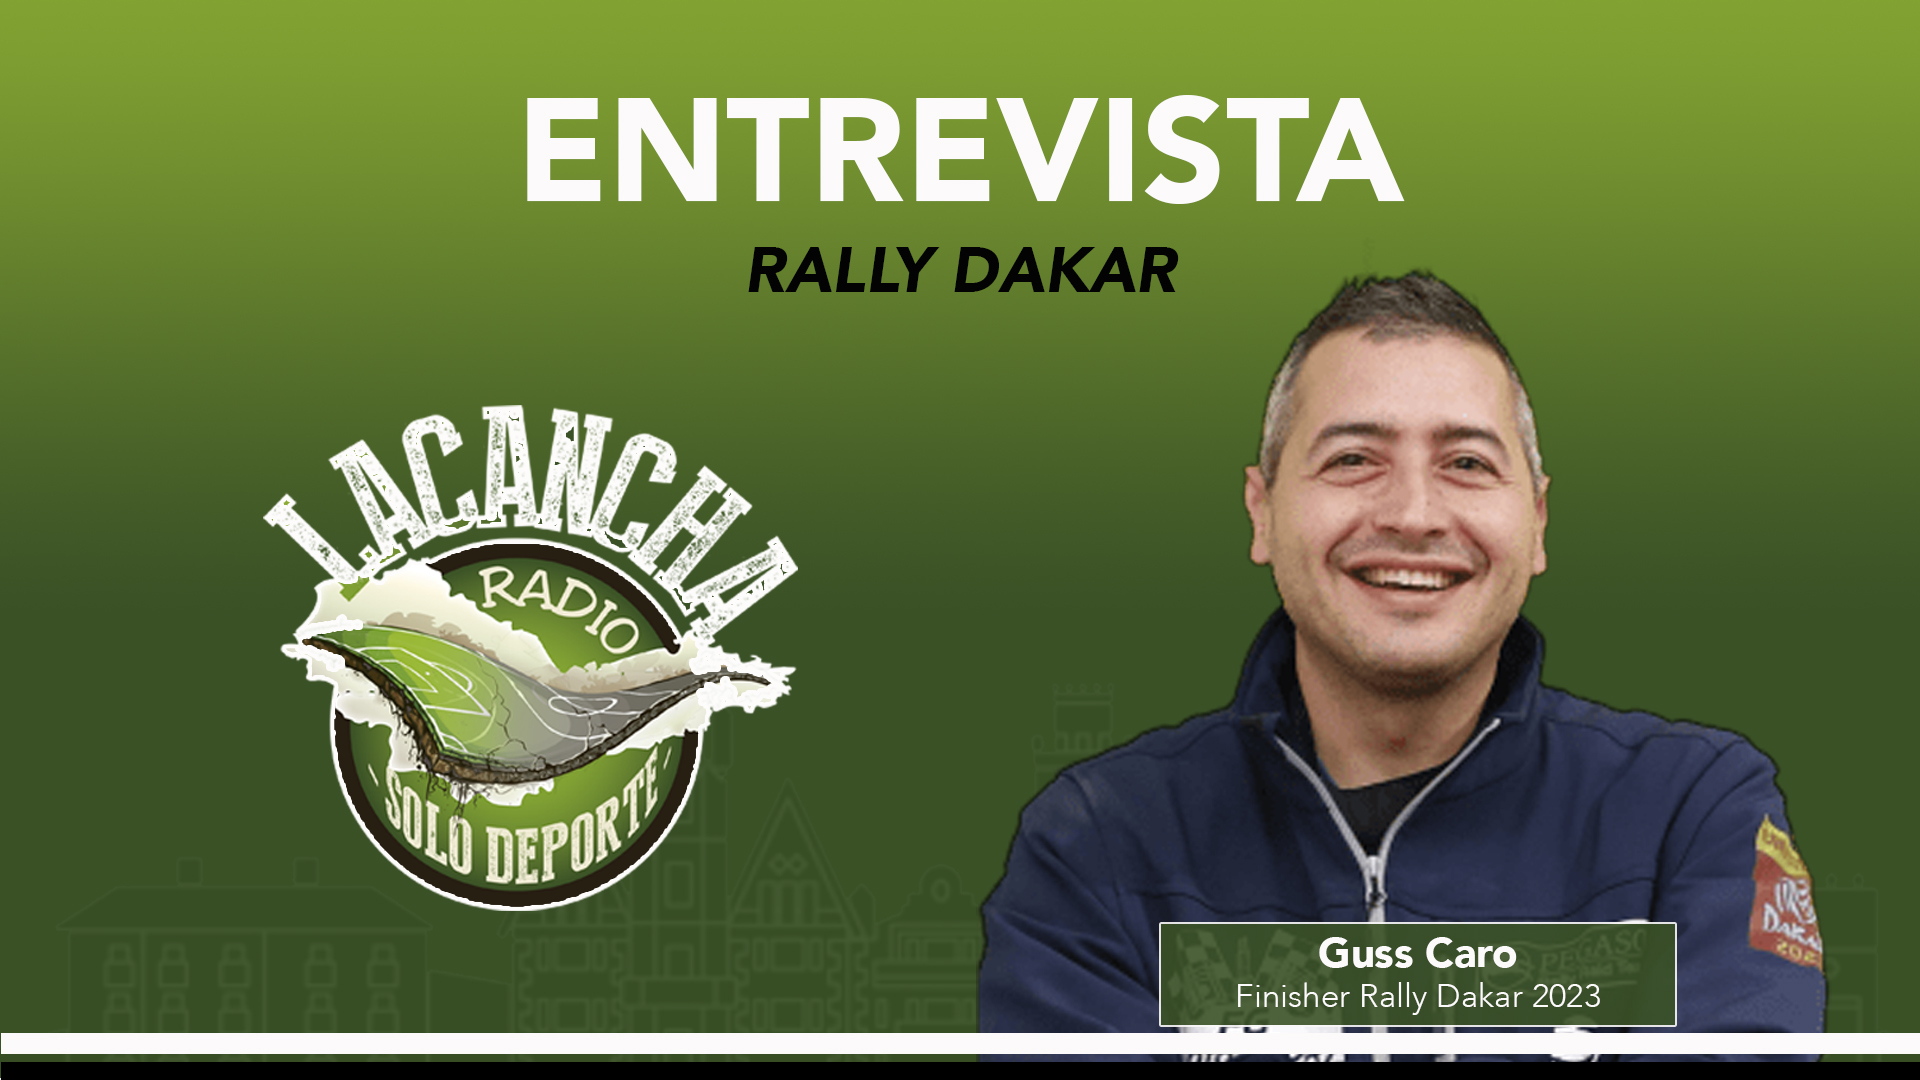 Entrevista con Guss Caro, finisher del Rally Dakar 2023 (26/01/2023)